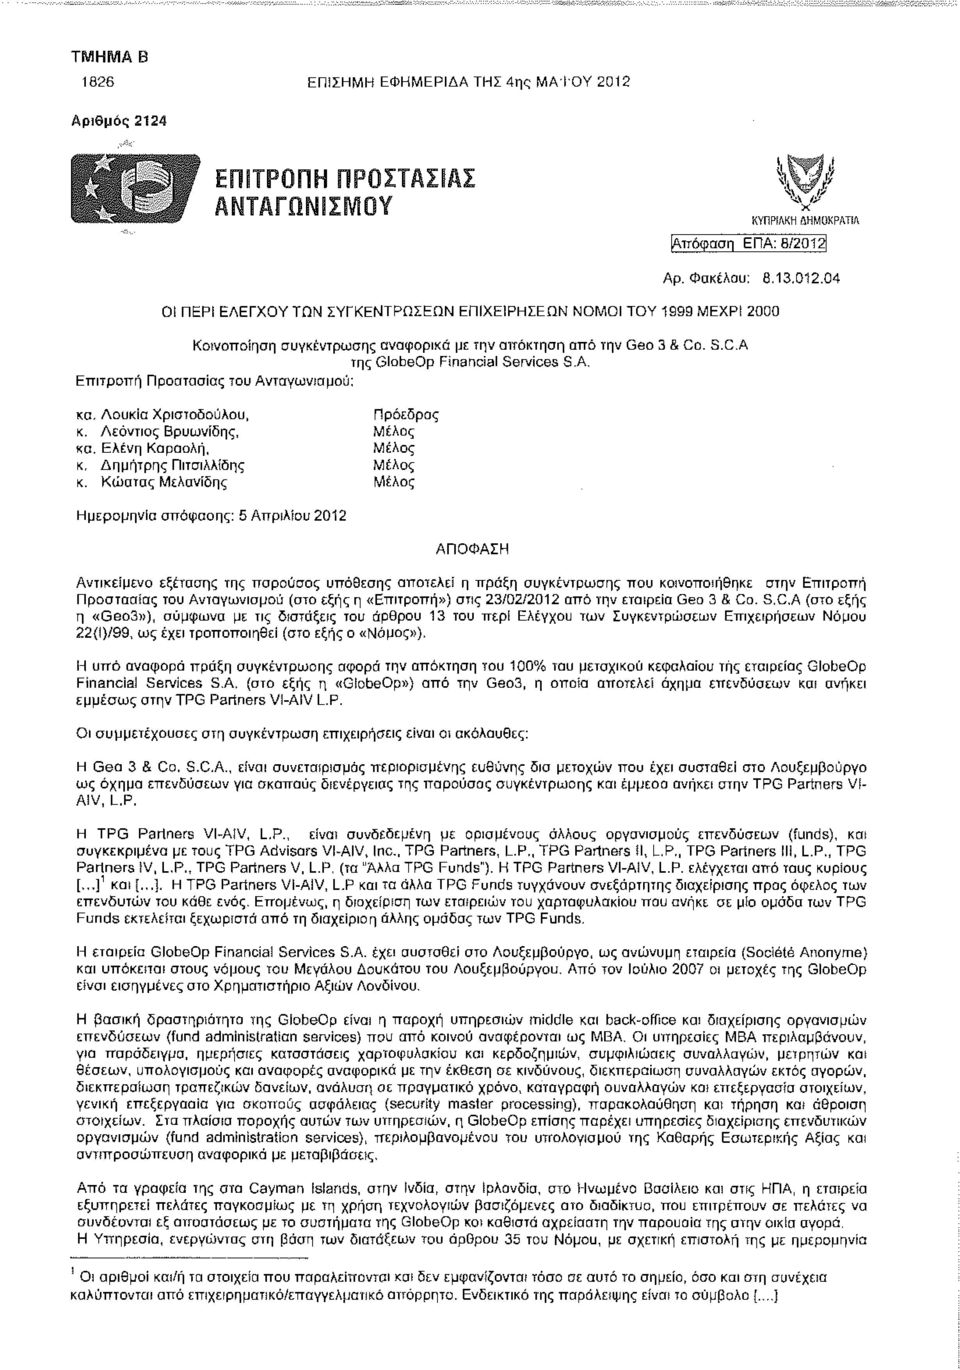 Κώστας Μελανίδης Μέλος Ημερομηνία απόφασης: 5 Απριλίου 2012 ΑΠΟΦΑΣΗ Αντικείμενο εξέτασης της παρούσας υπόθεσης αποτελεί η πράξη συγκέντρωσης που κοινοποιήθηκε στην Επιτροπή Προστασίας του